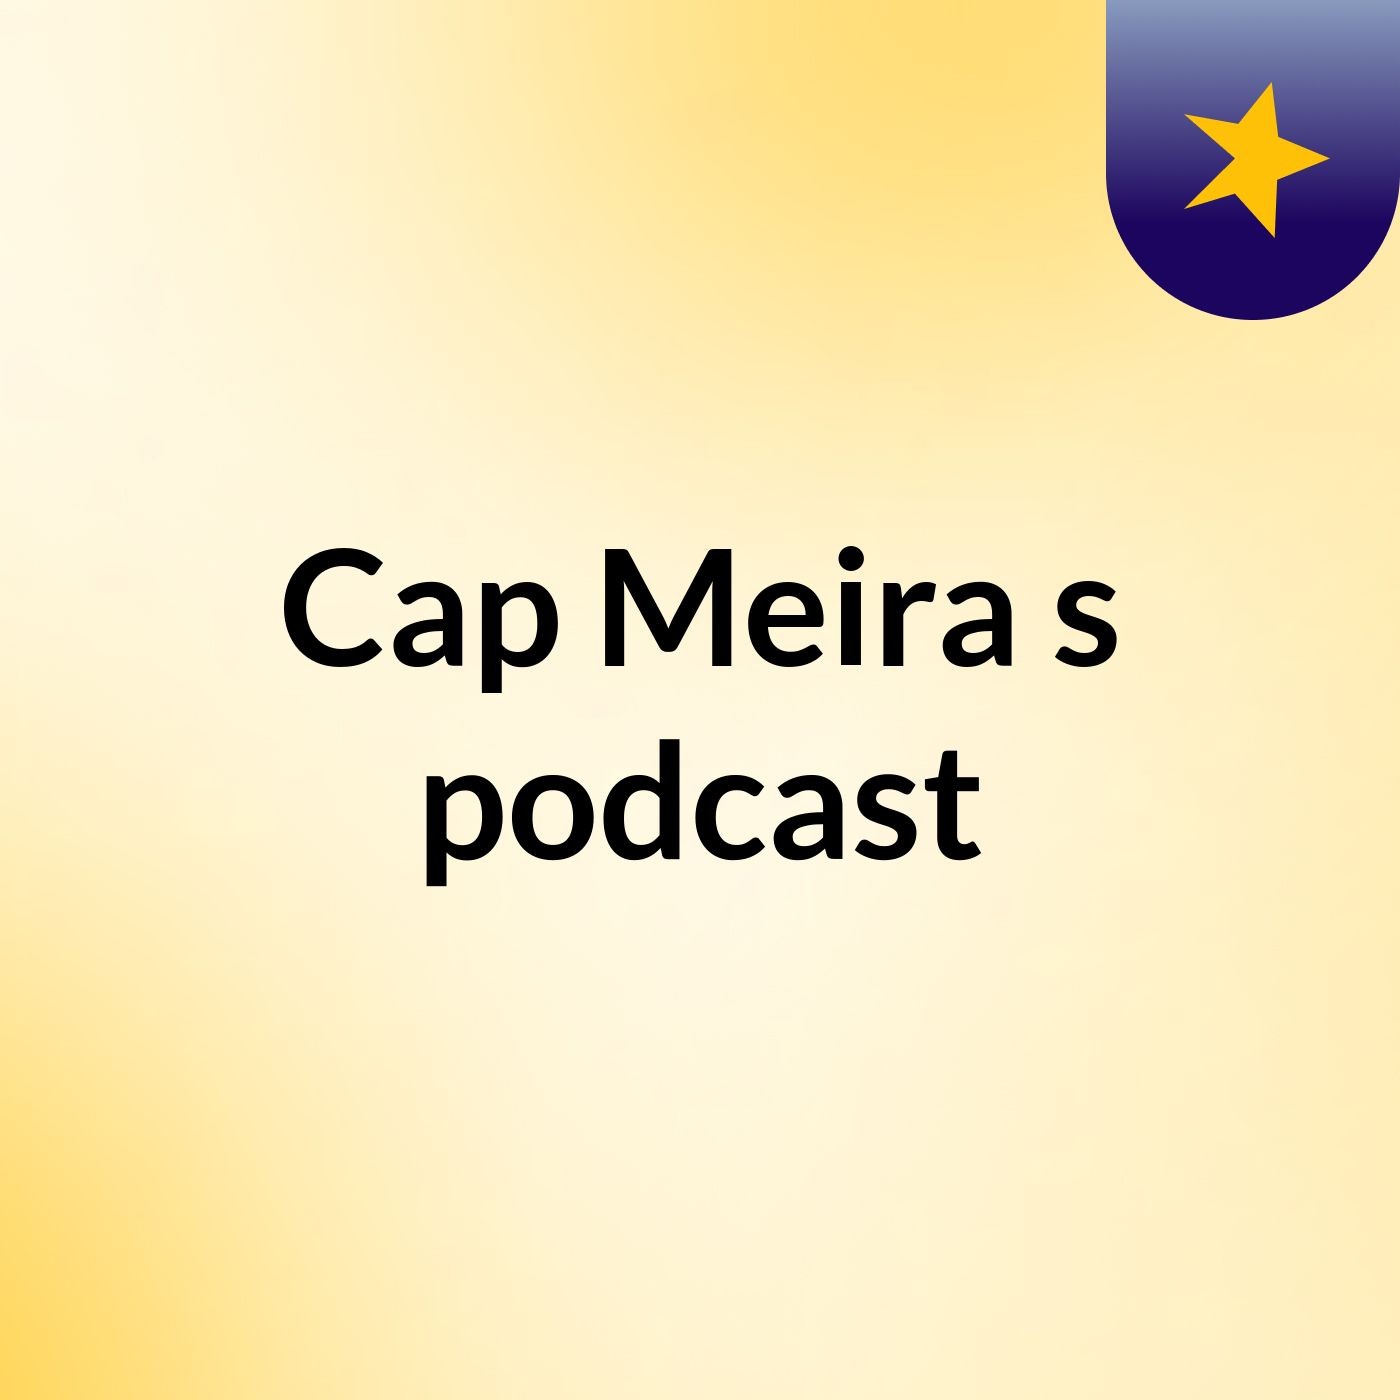 Cap Meira's podcast